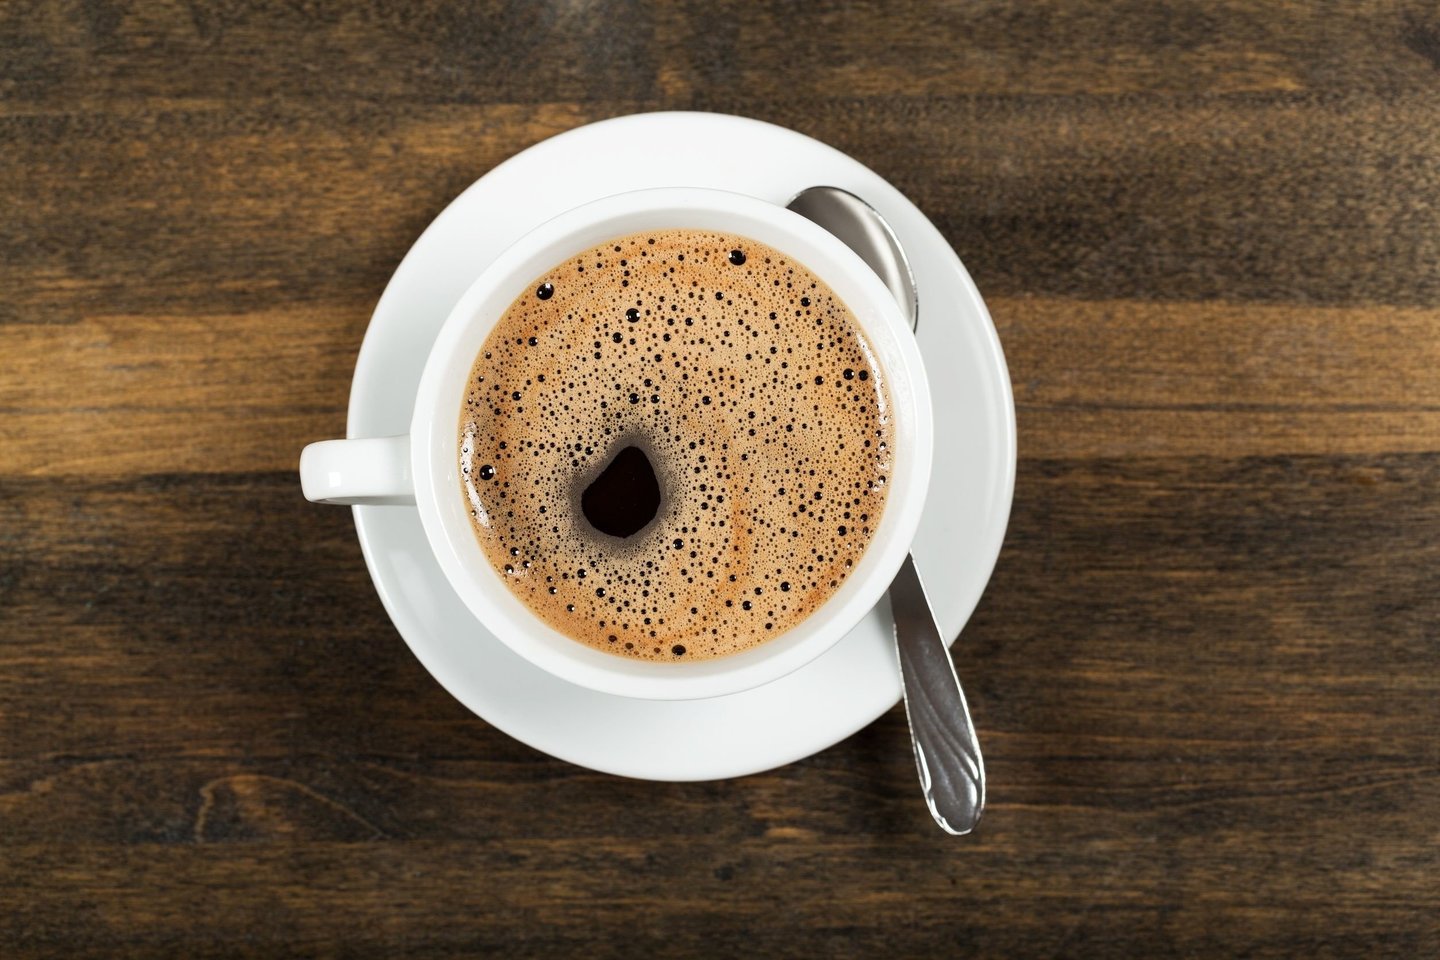  Per dieną galite drąsiai išgerti iki 6 puodelių kavos. <br>123rf.com nuotr.